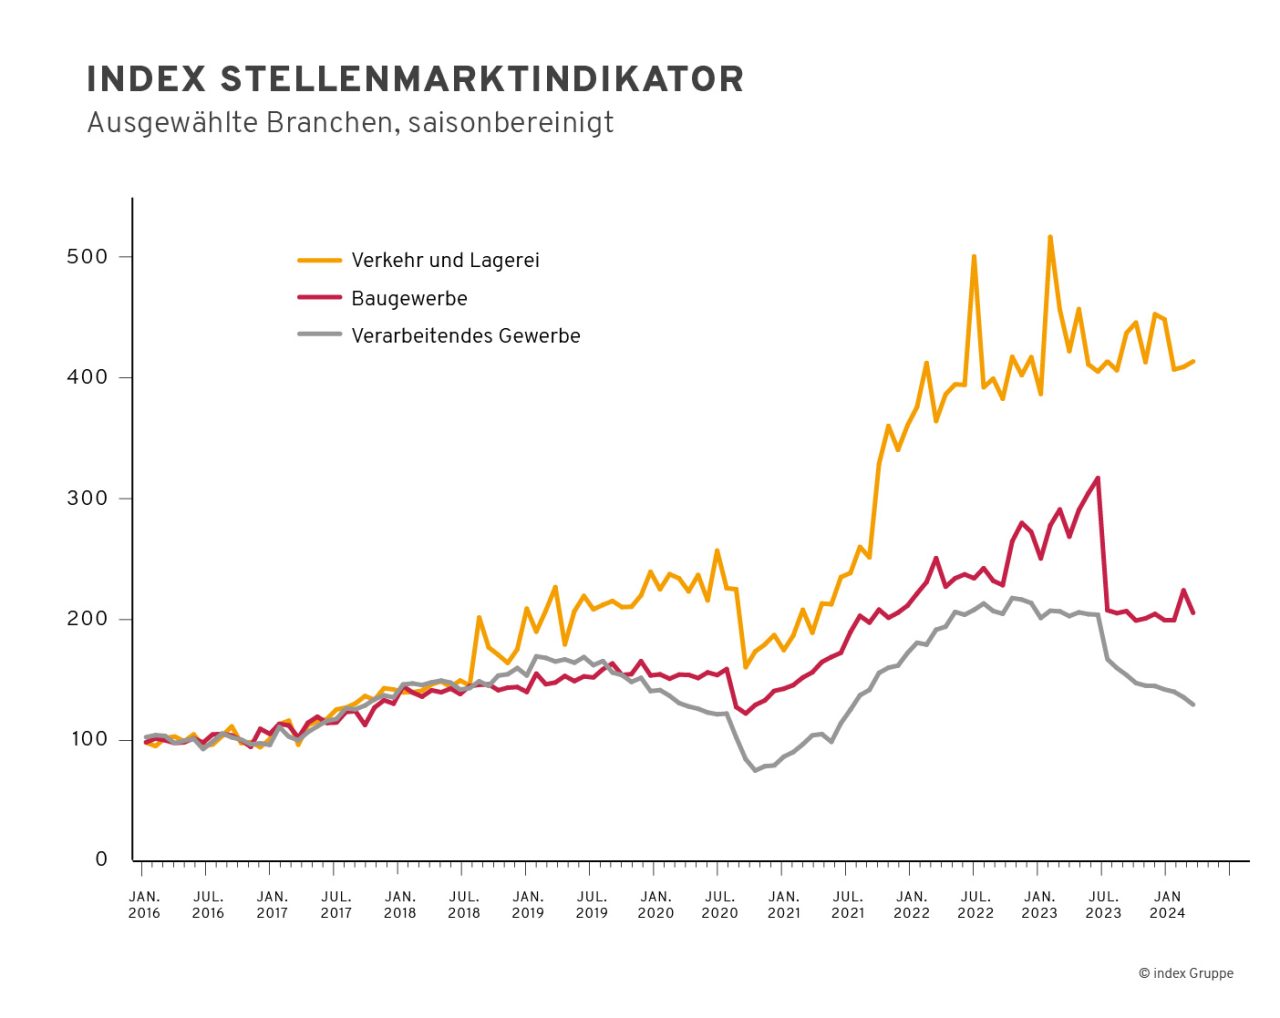 index-Stellenmarktindikator Januar 2016 bis Januar 2024 in den Branchen Verkehr und Lagerei, Baugewerbe und verarbeitendes Gewerbe